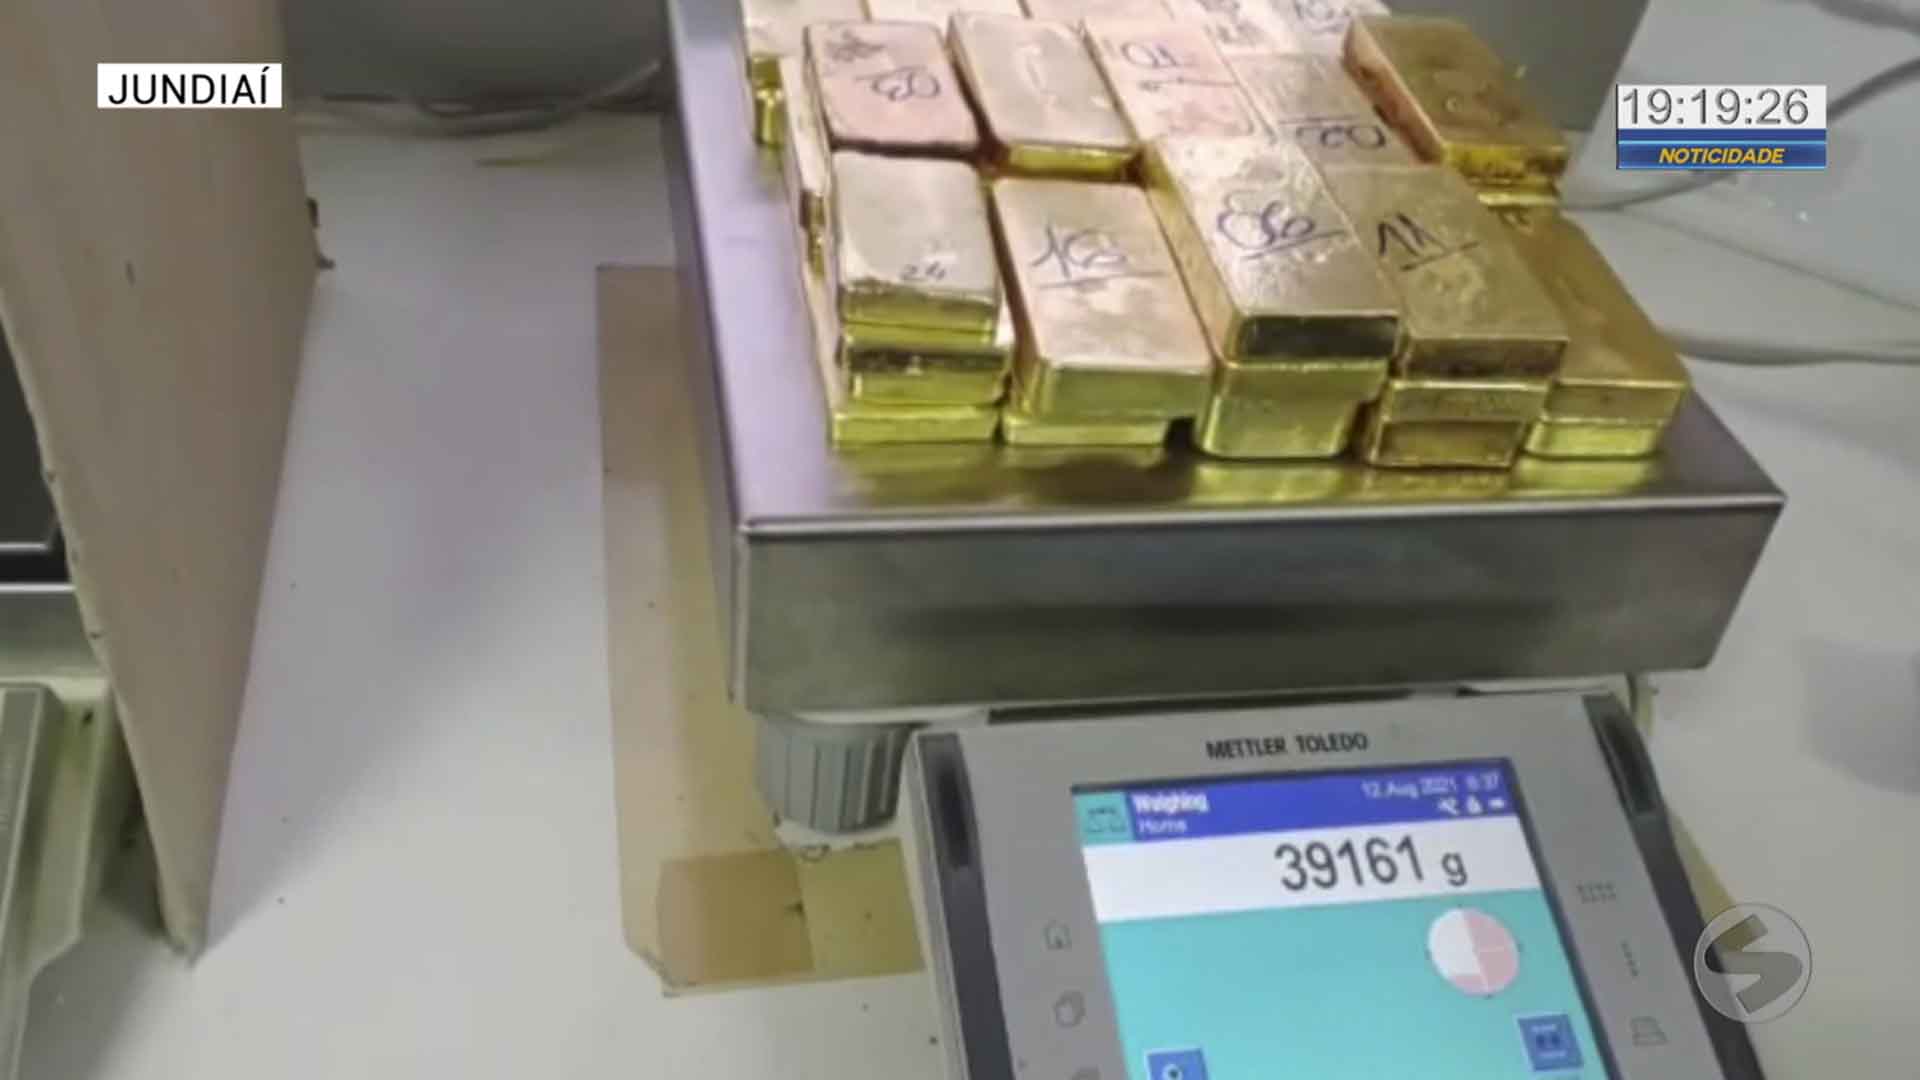 Polícia Federal apreende quase 40kg de ouro em aeroporto de Jundiaí